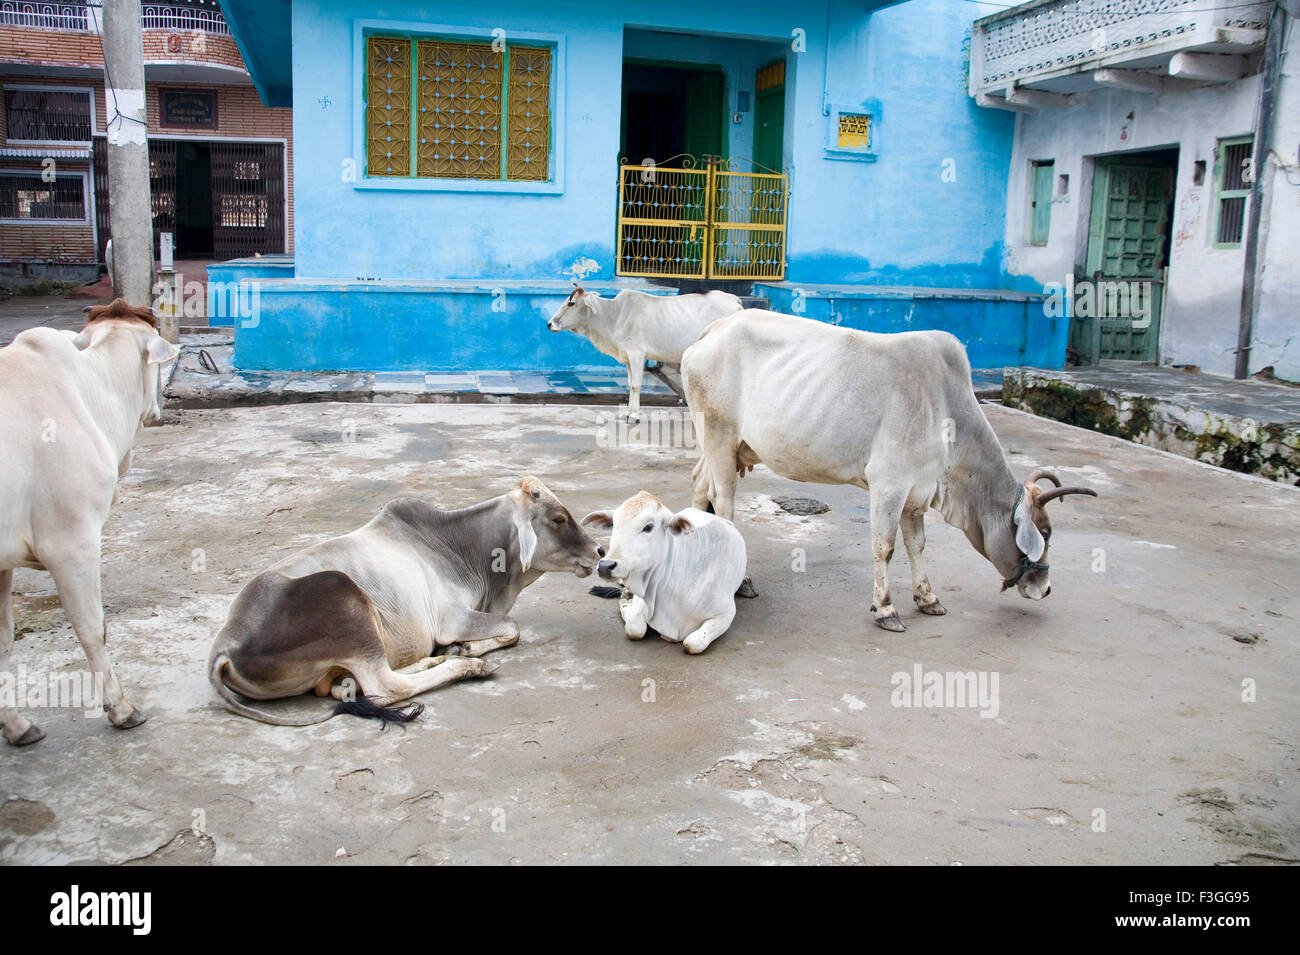 Vaches se reposant à l'avant de couleur bleu Village Delwara maisons ; ; ; ; Inde Rajasthan Udaipur Banque D'Images